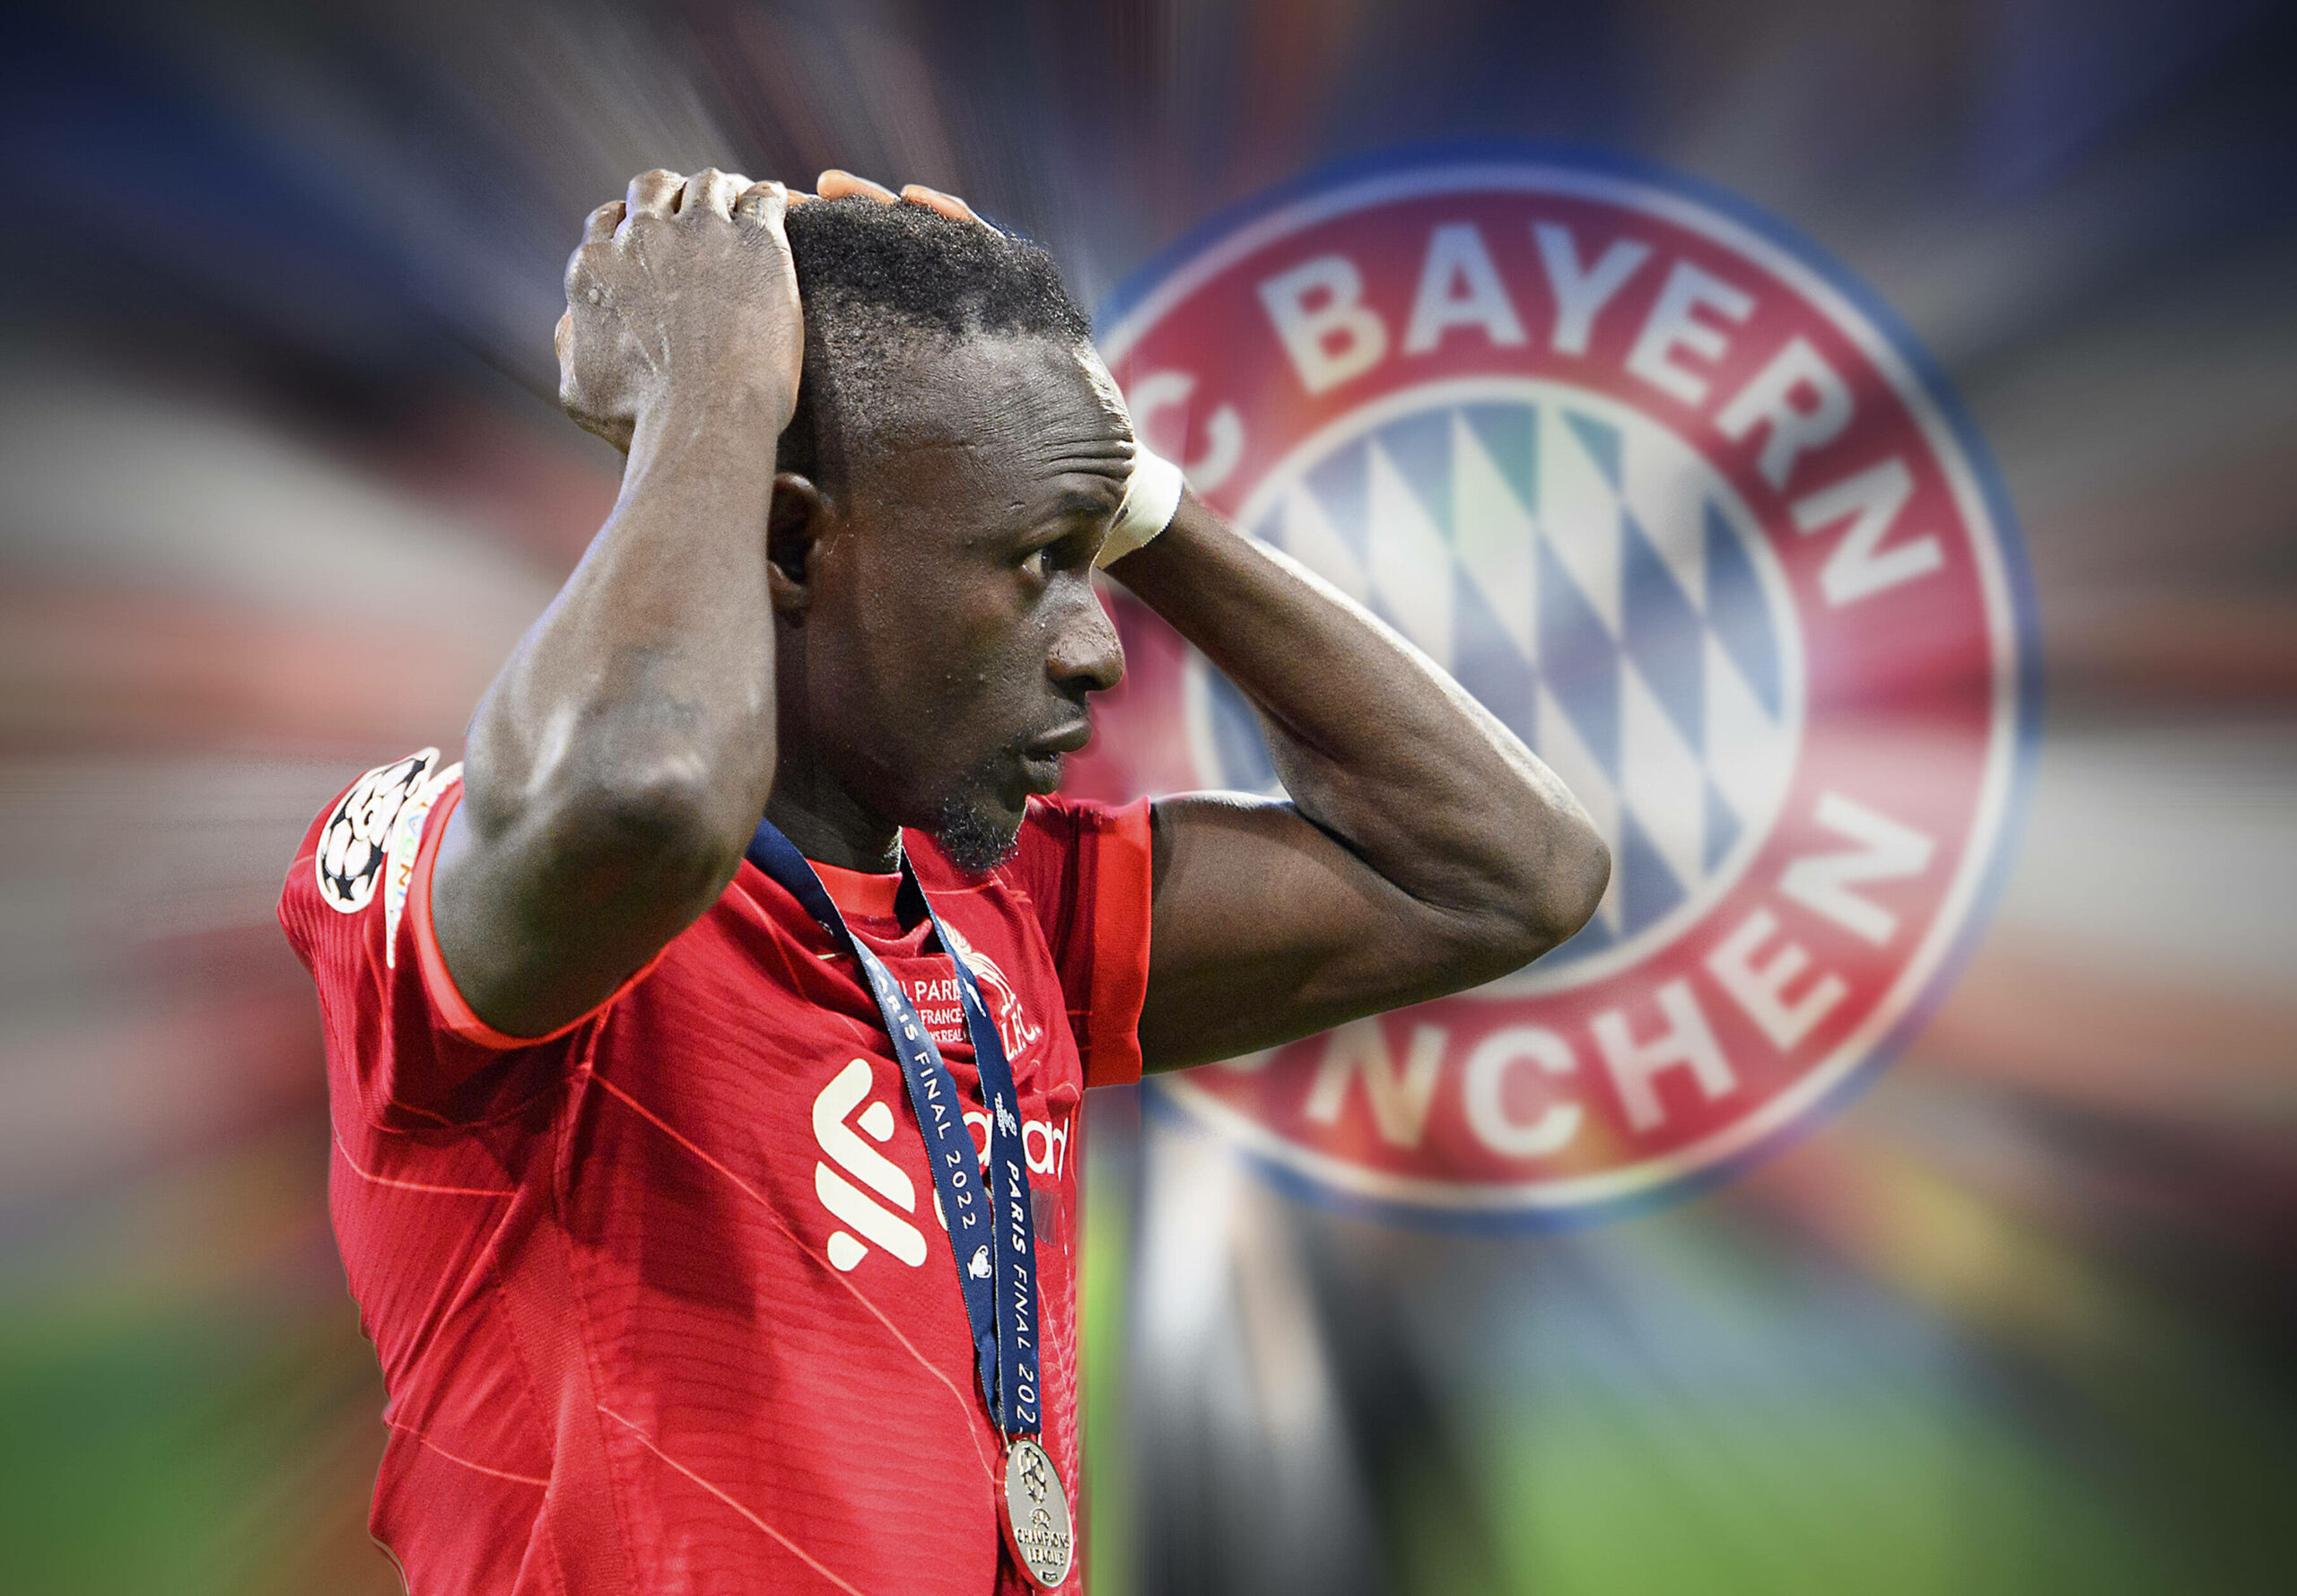 Laut Medienberichten sollen der FC Bayern und Sadio Mane sich auf einen Dreijahresvertrag geeinigt haben